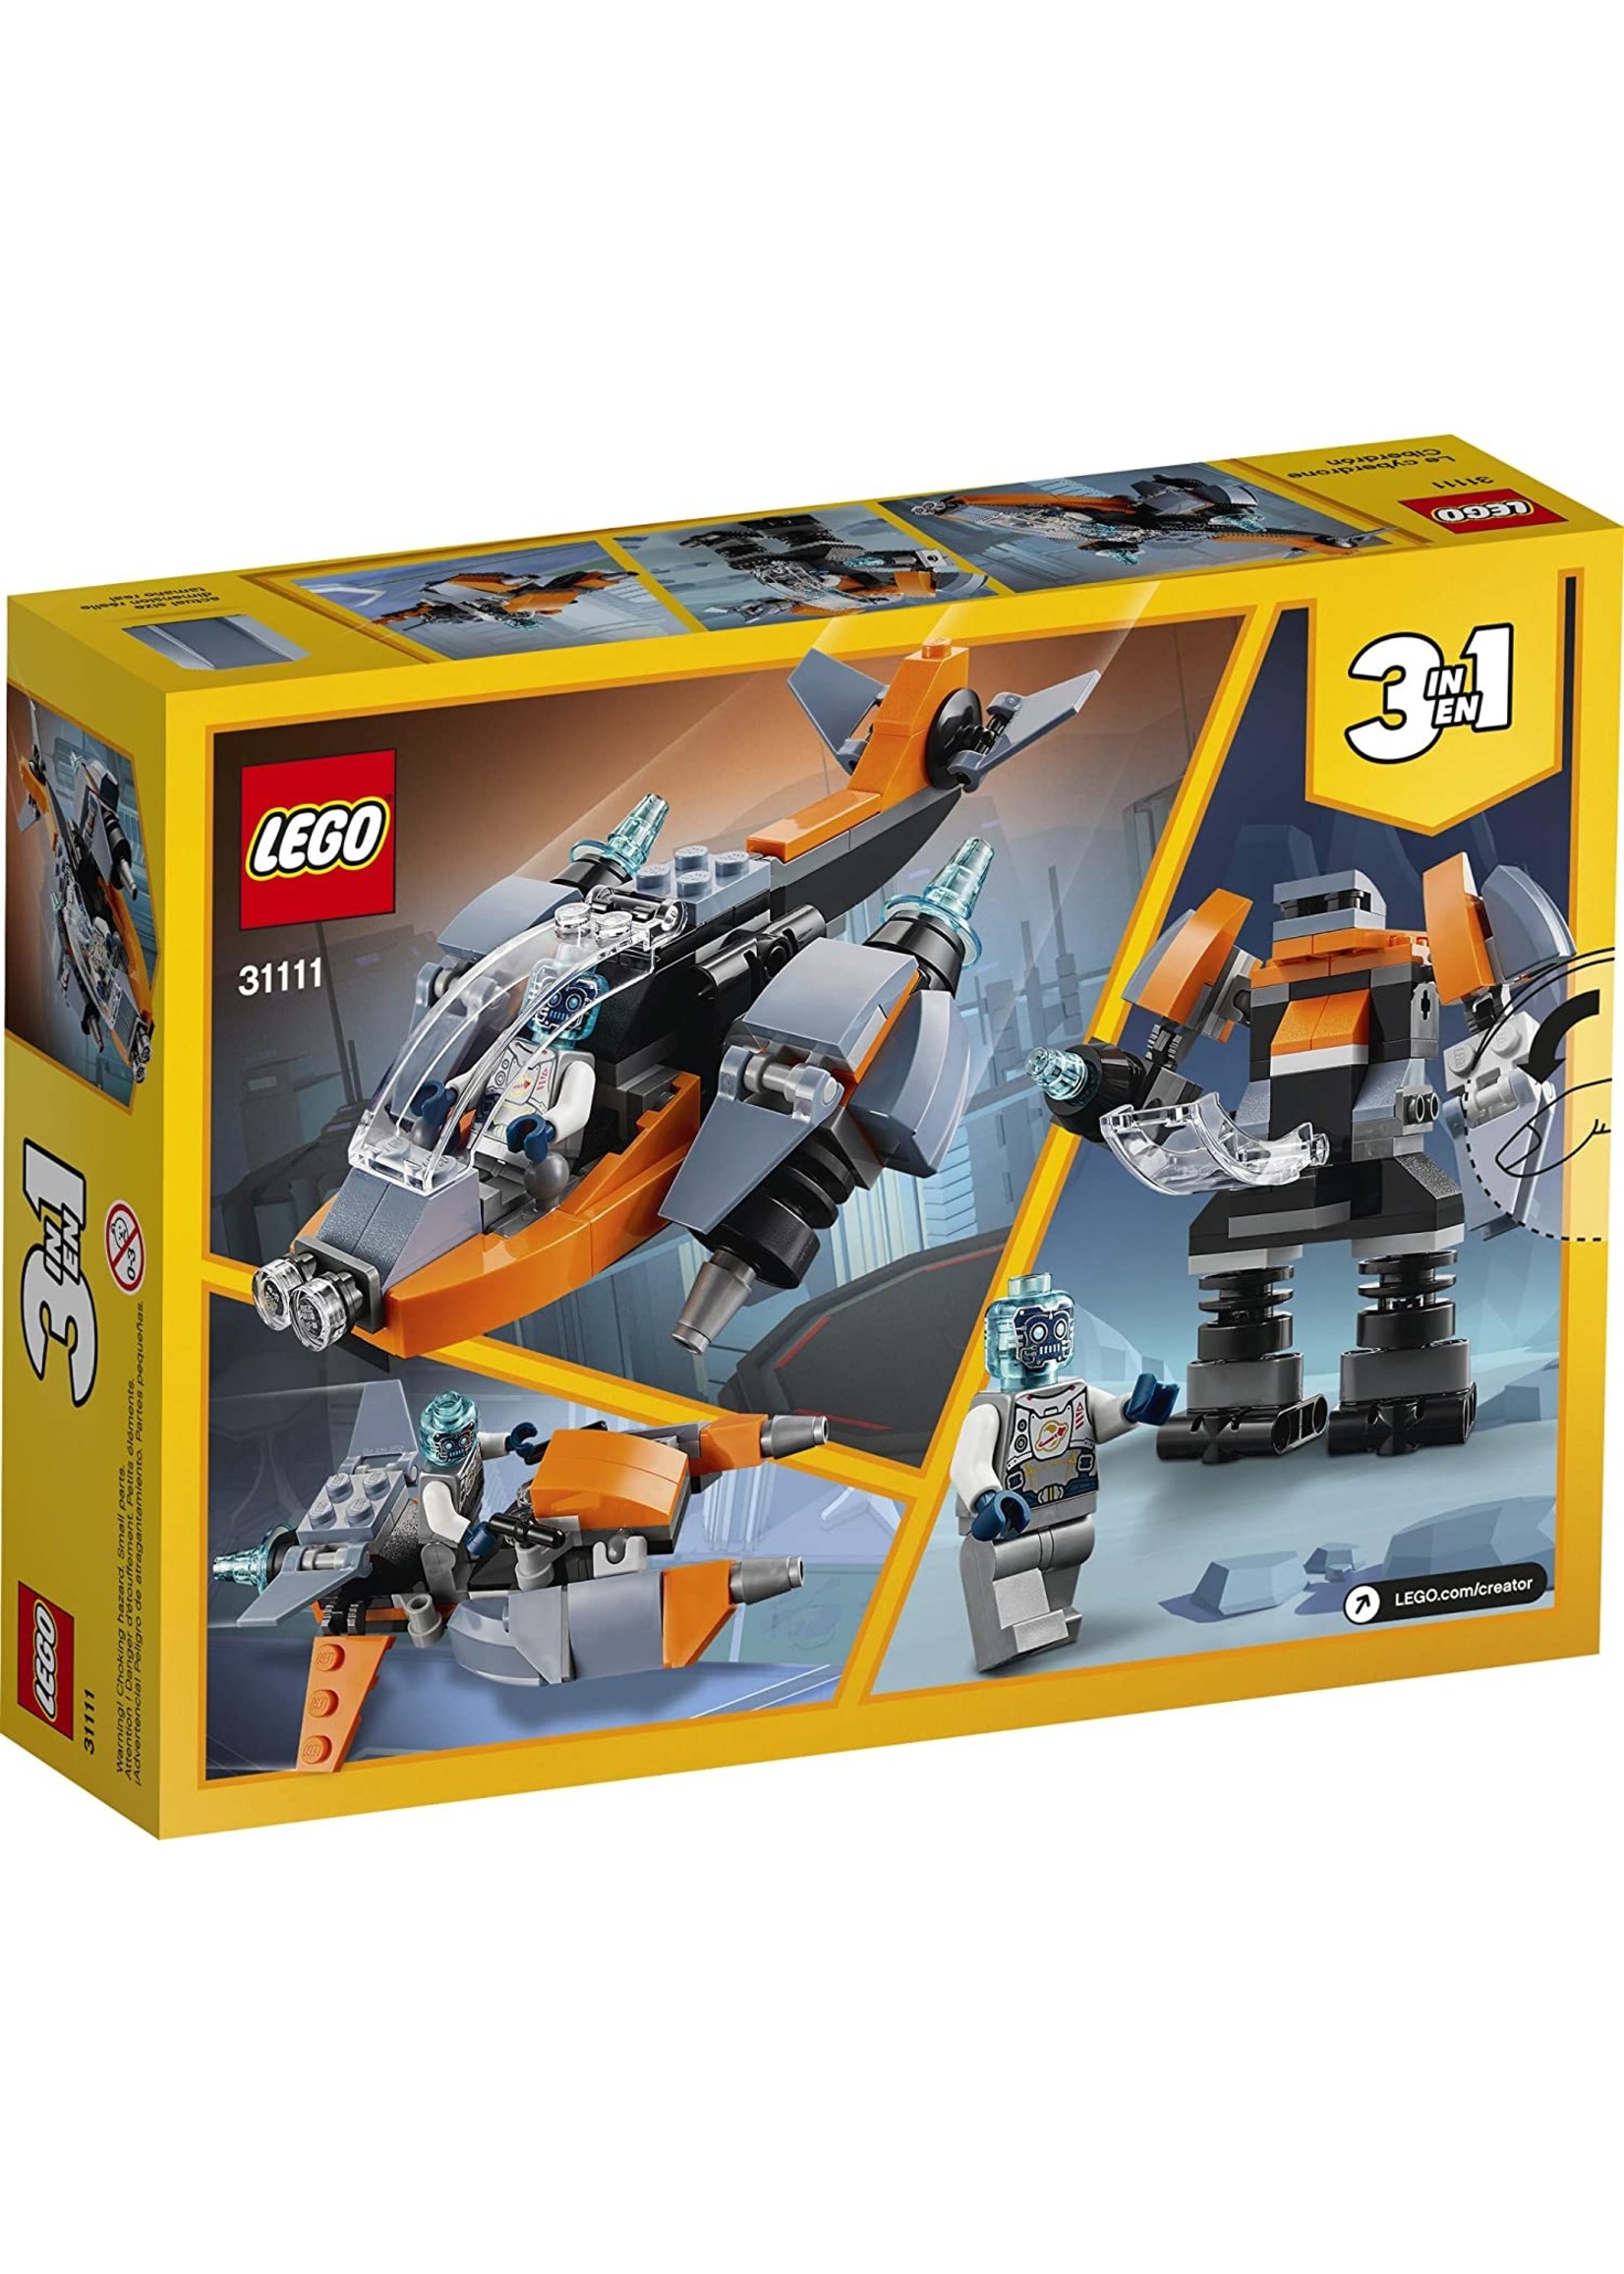 LEGO 31111 - Cyber Drone